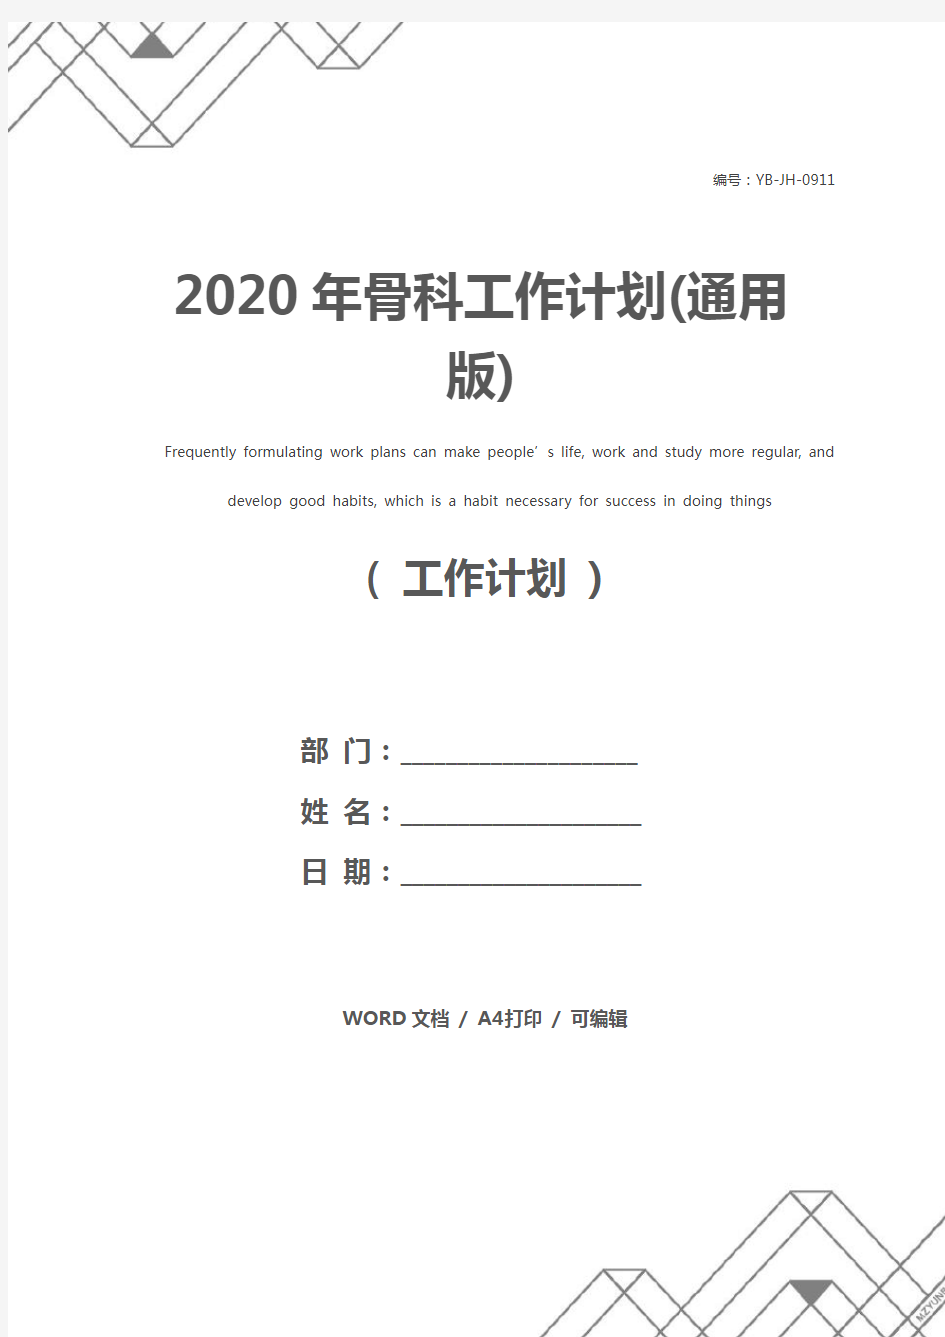 2020年骨科工作计划(通用版)